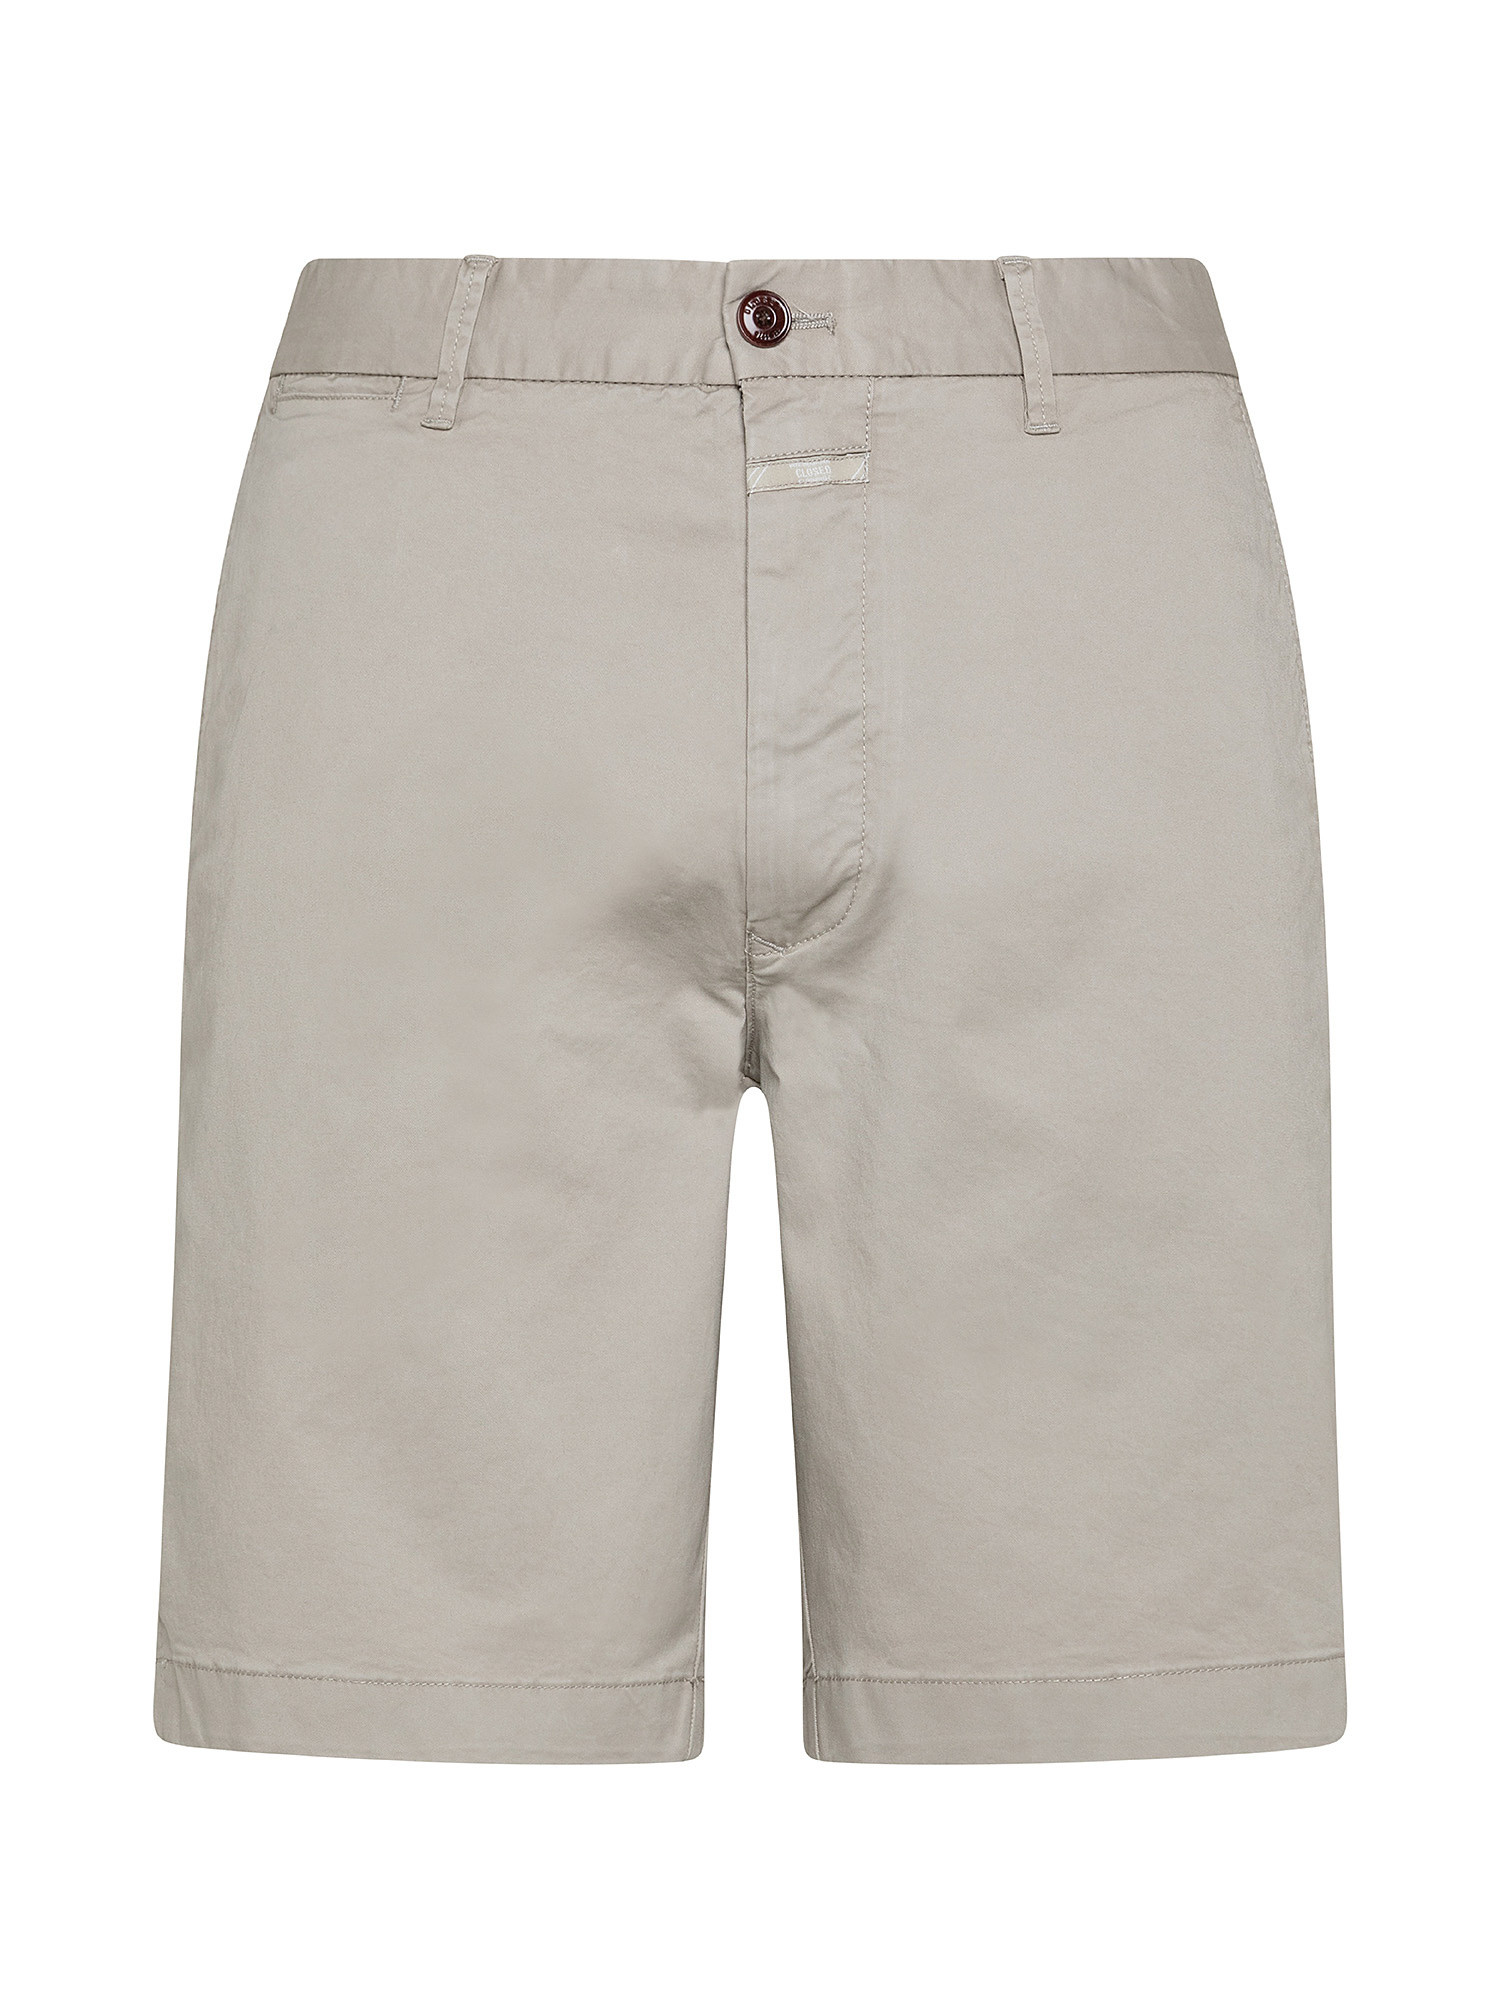 Pantaloncini chino, Grigio chiaro, large image number 0